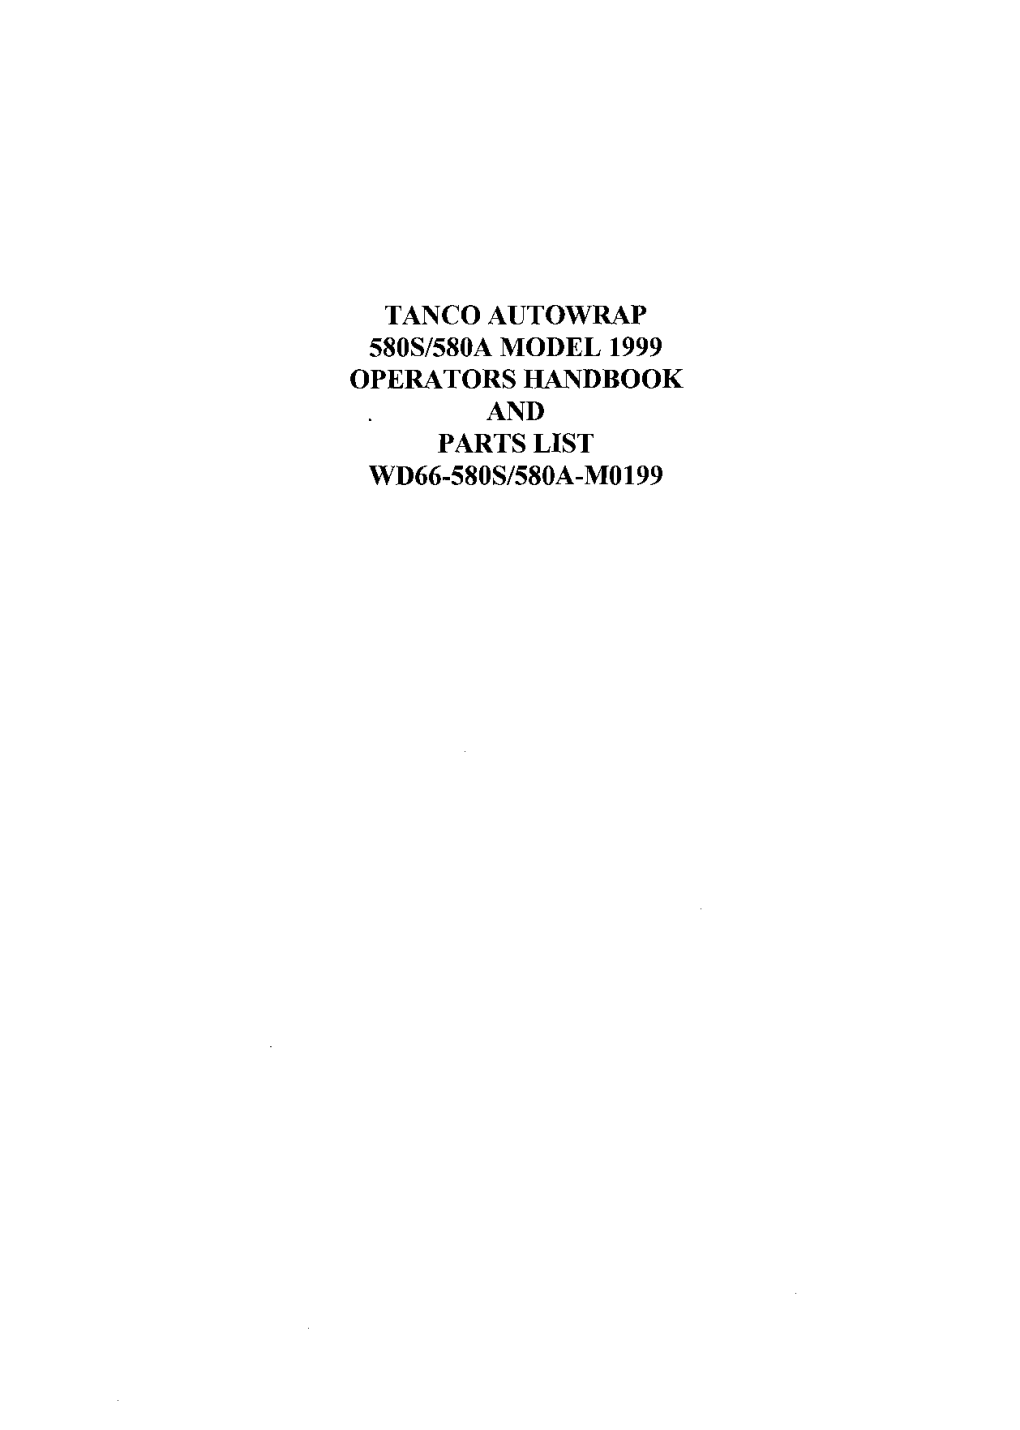 Tanco Autowrap 580S/580A Model 1999 Operators Handbook and Parts List Wd66-580S/580A-Mo199 Guarantee